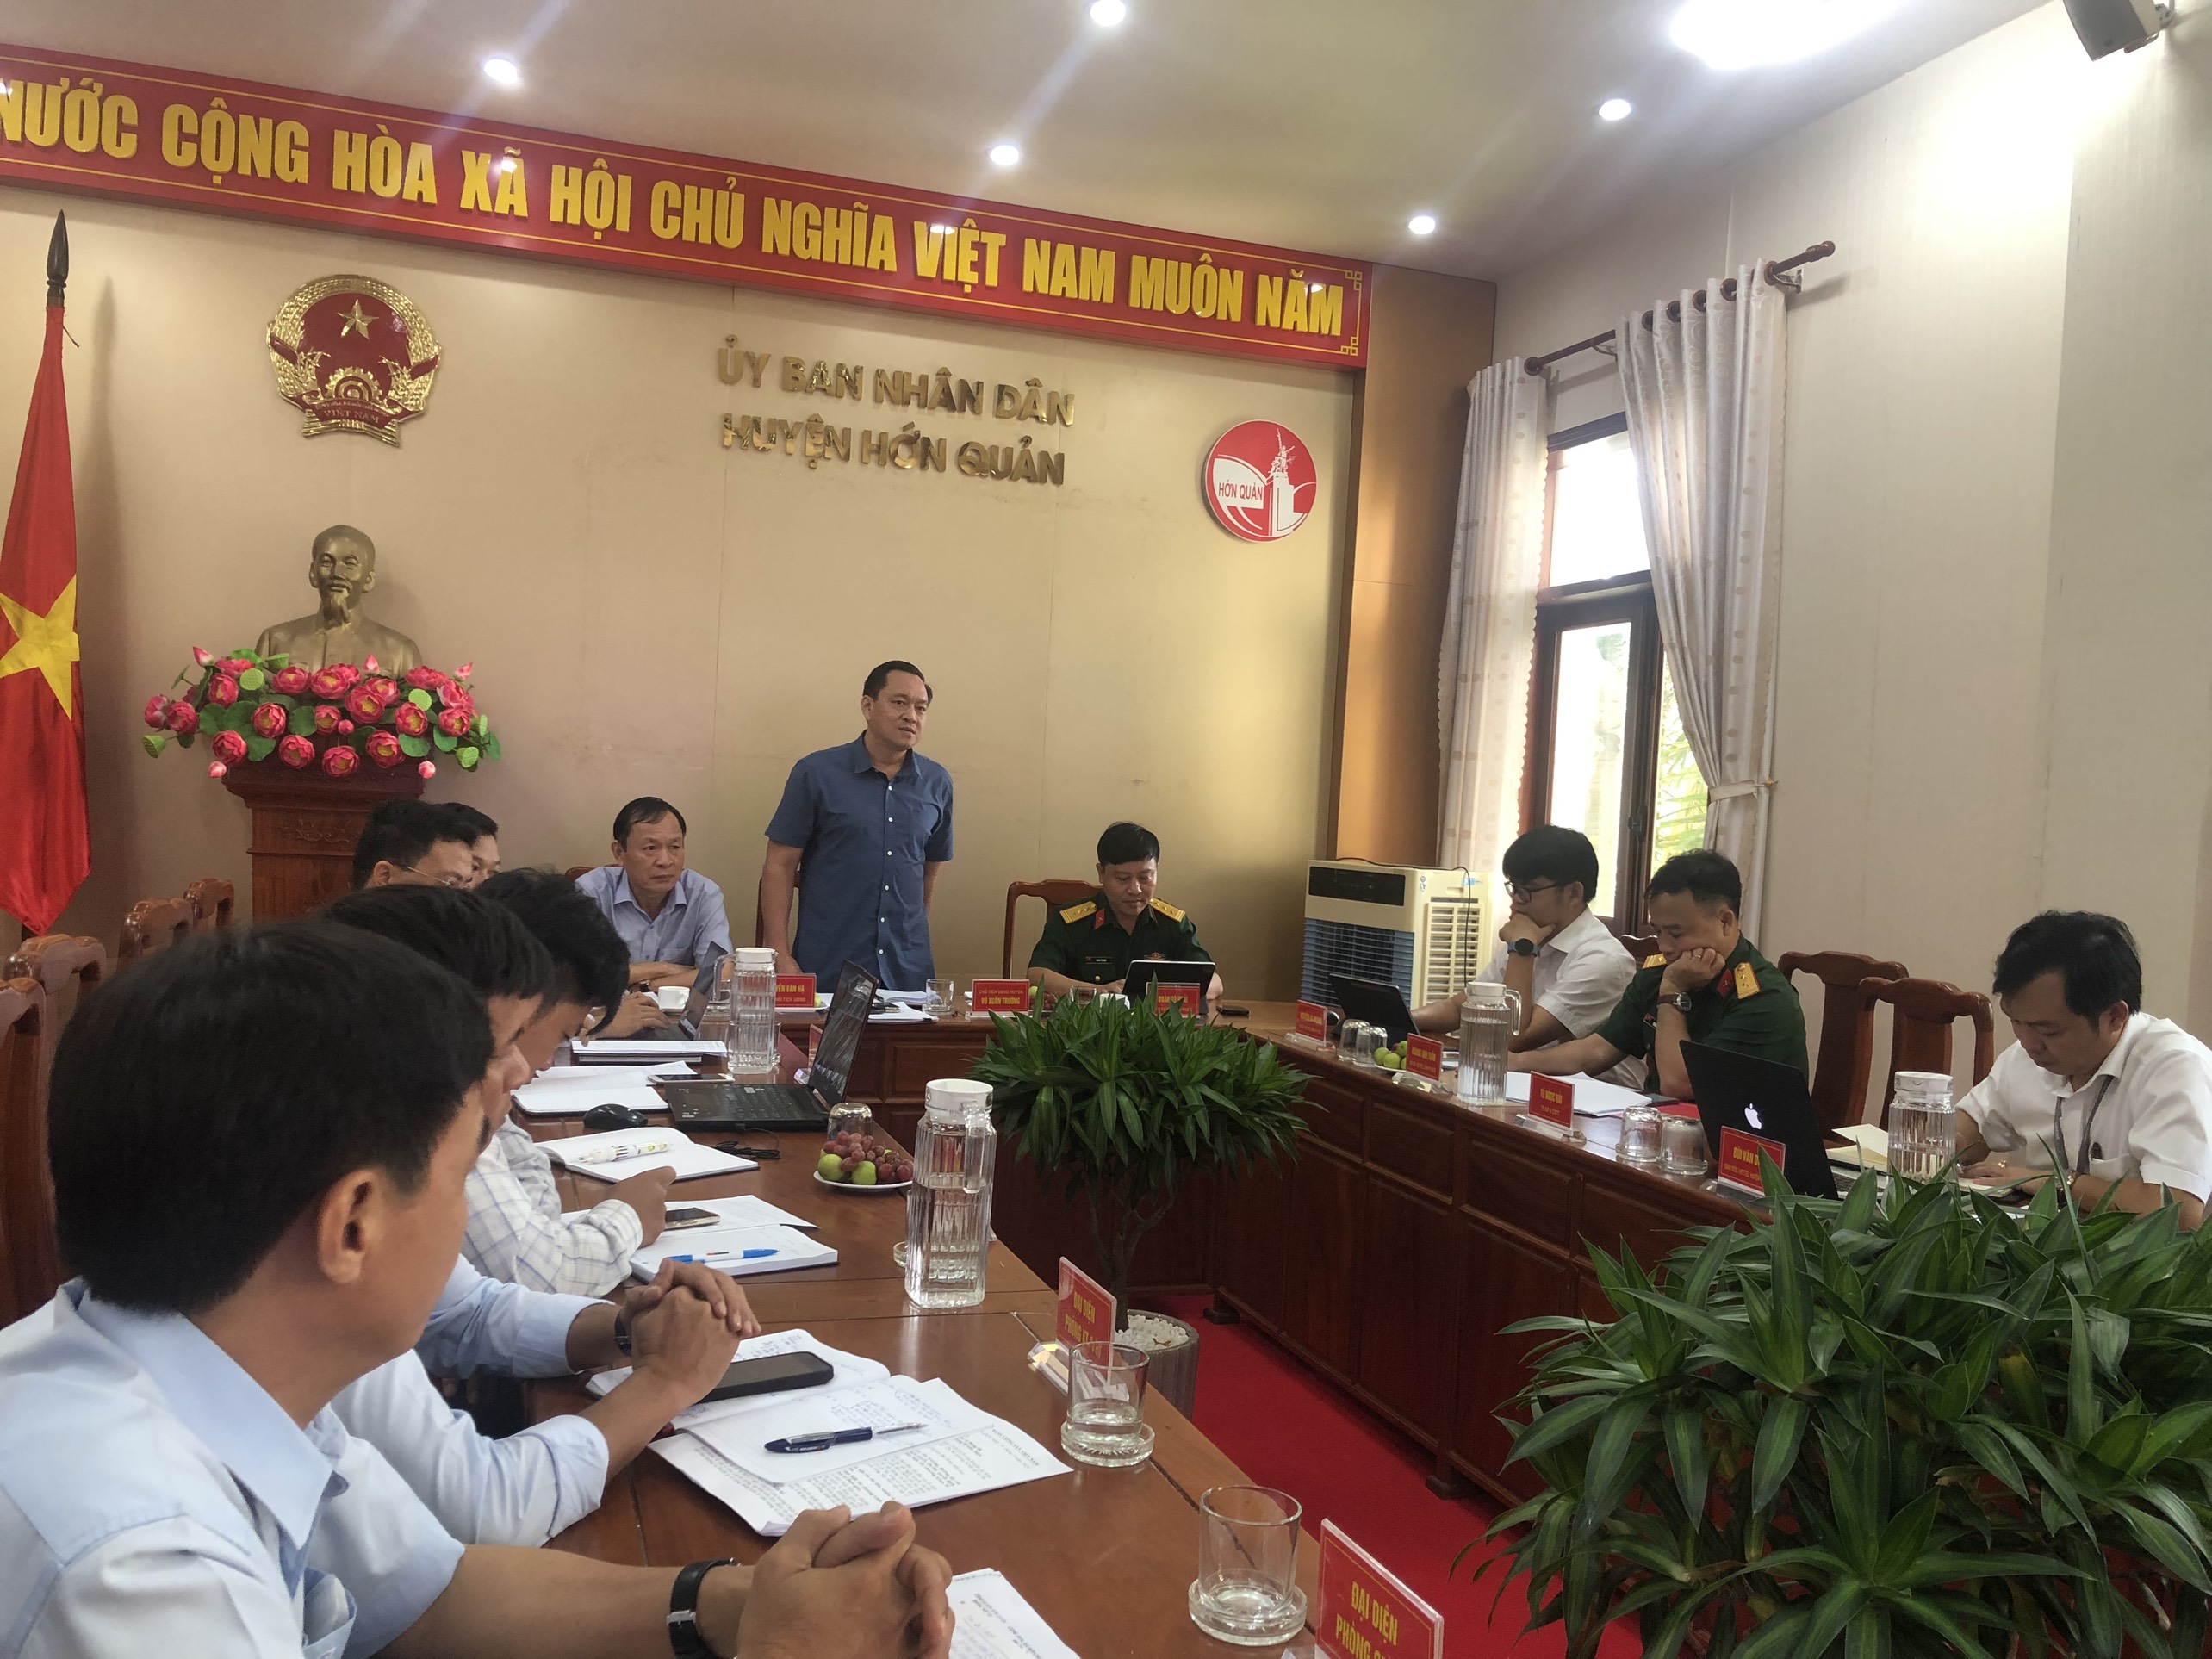 Chủ tịch UBND huyện Vũ Xuân Trường làm việc với Viettel Bình Phước để hỗ trợ doanh nghiệp kinh doanh tốt hơn tại huyện Hớn Quản.